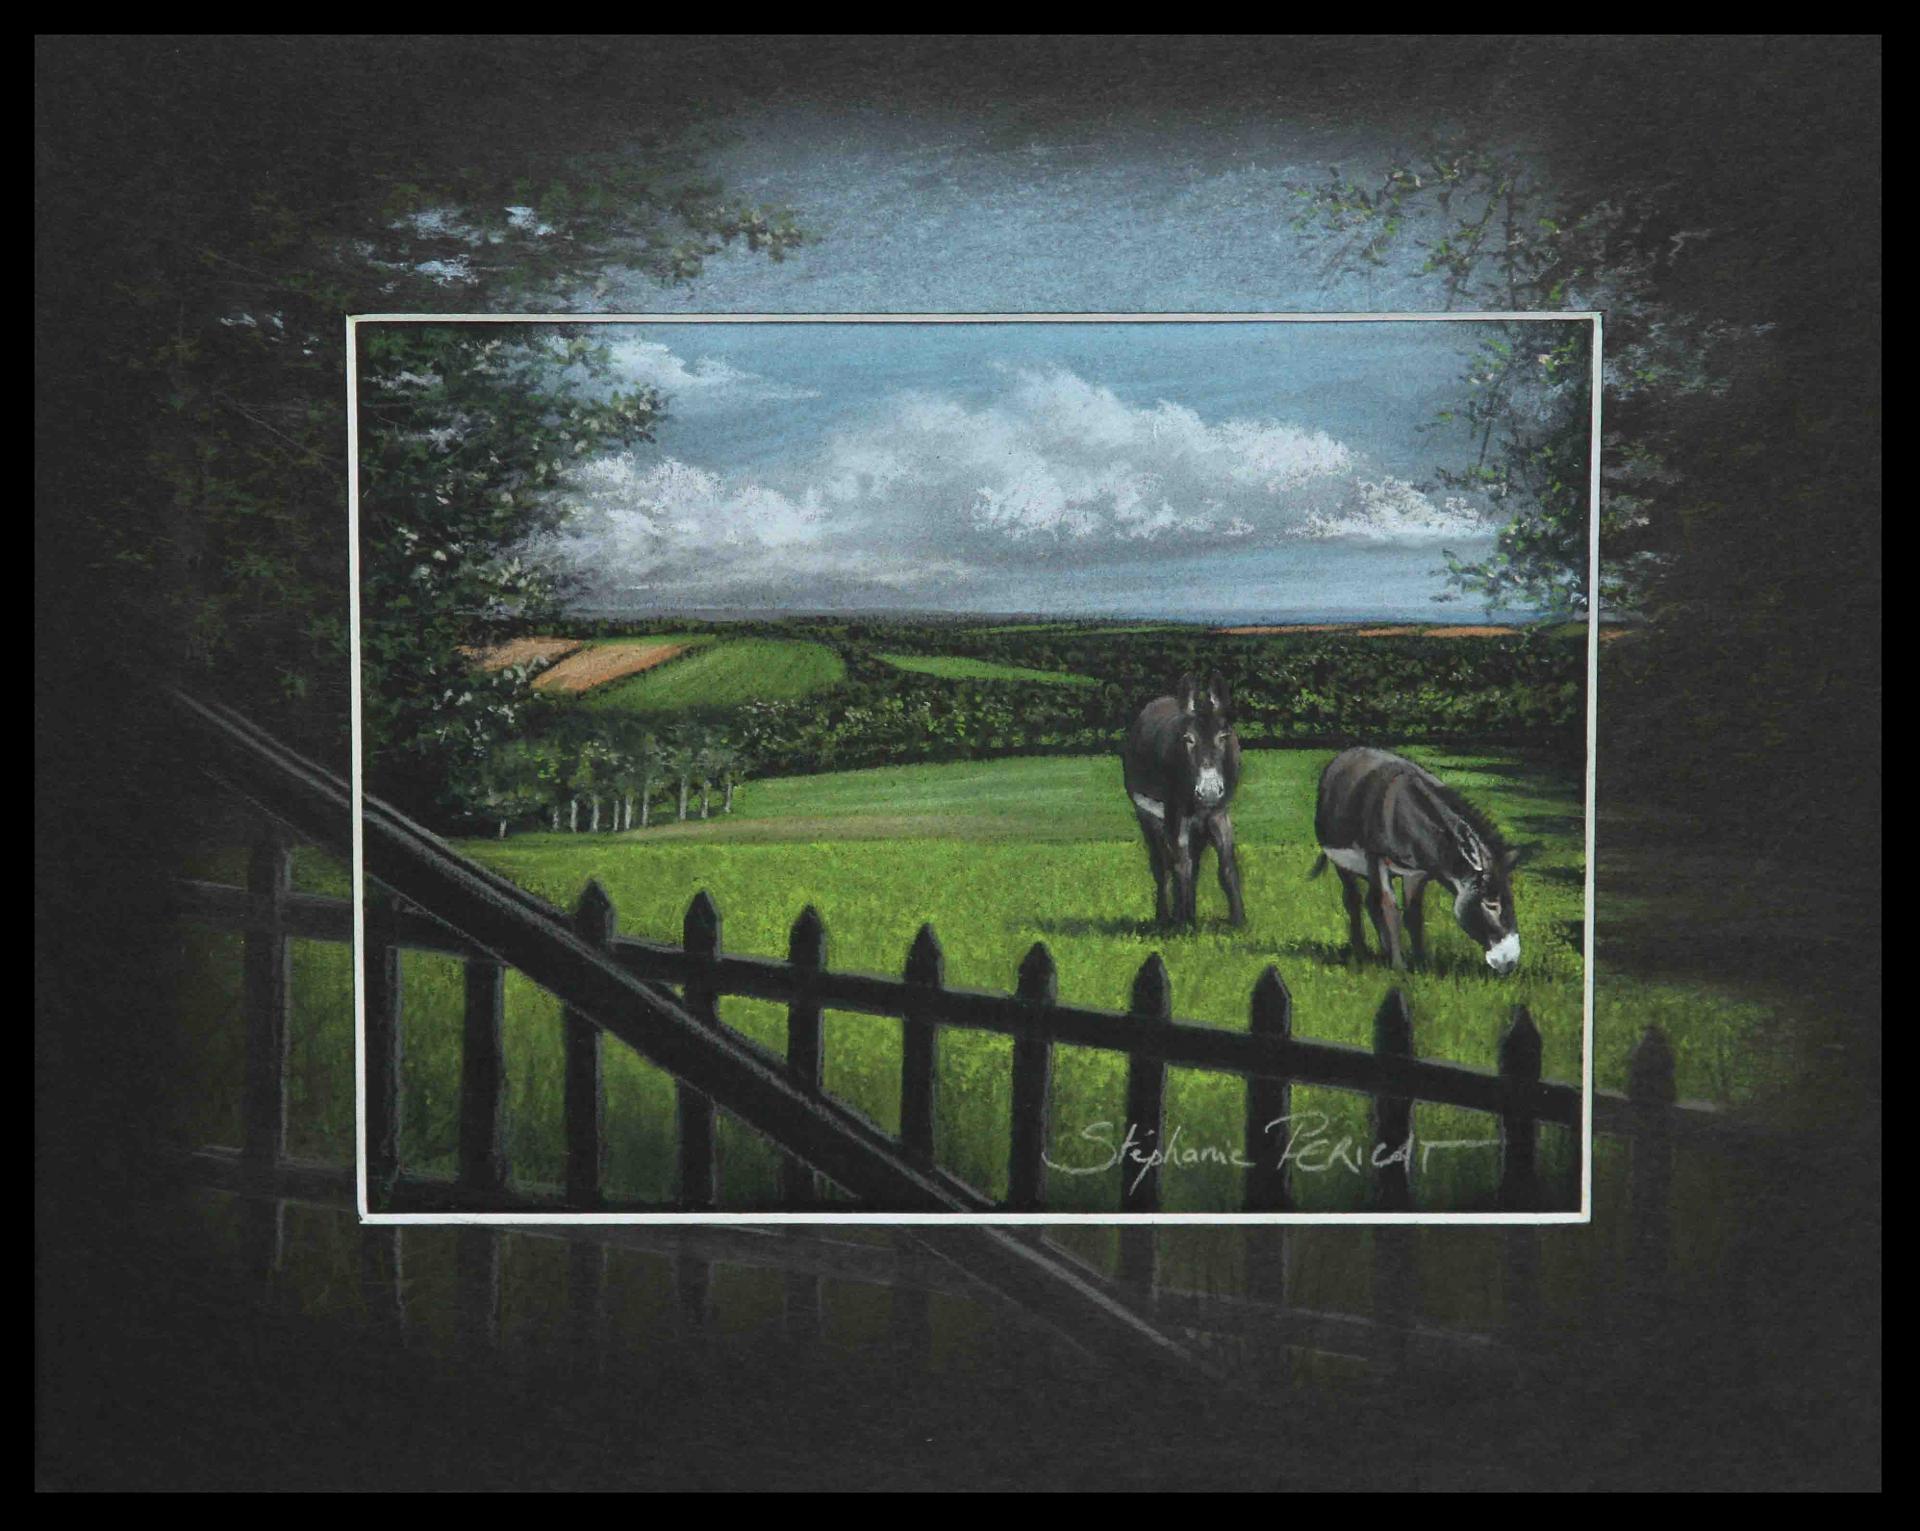 ânes normands à barneville carteret(normans donkeys at barneville carteret) -  24x30cm